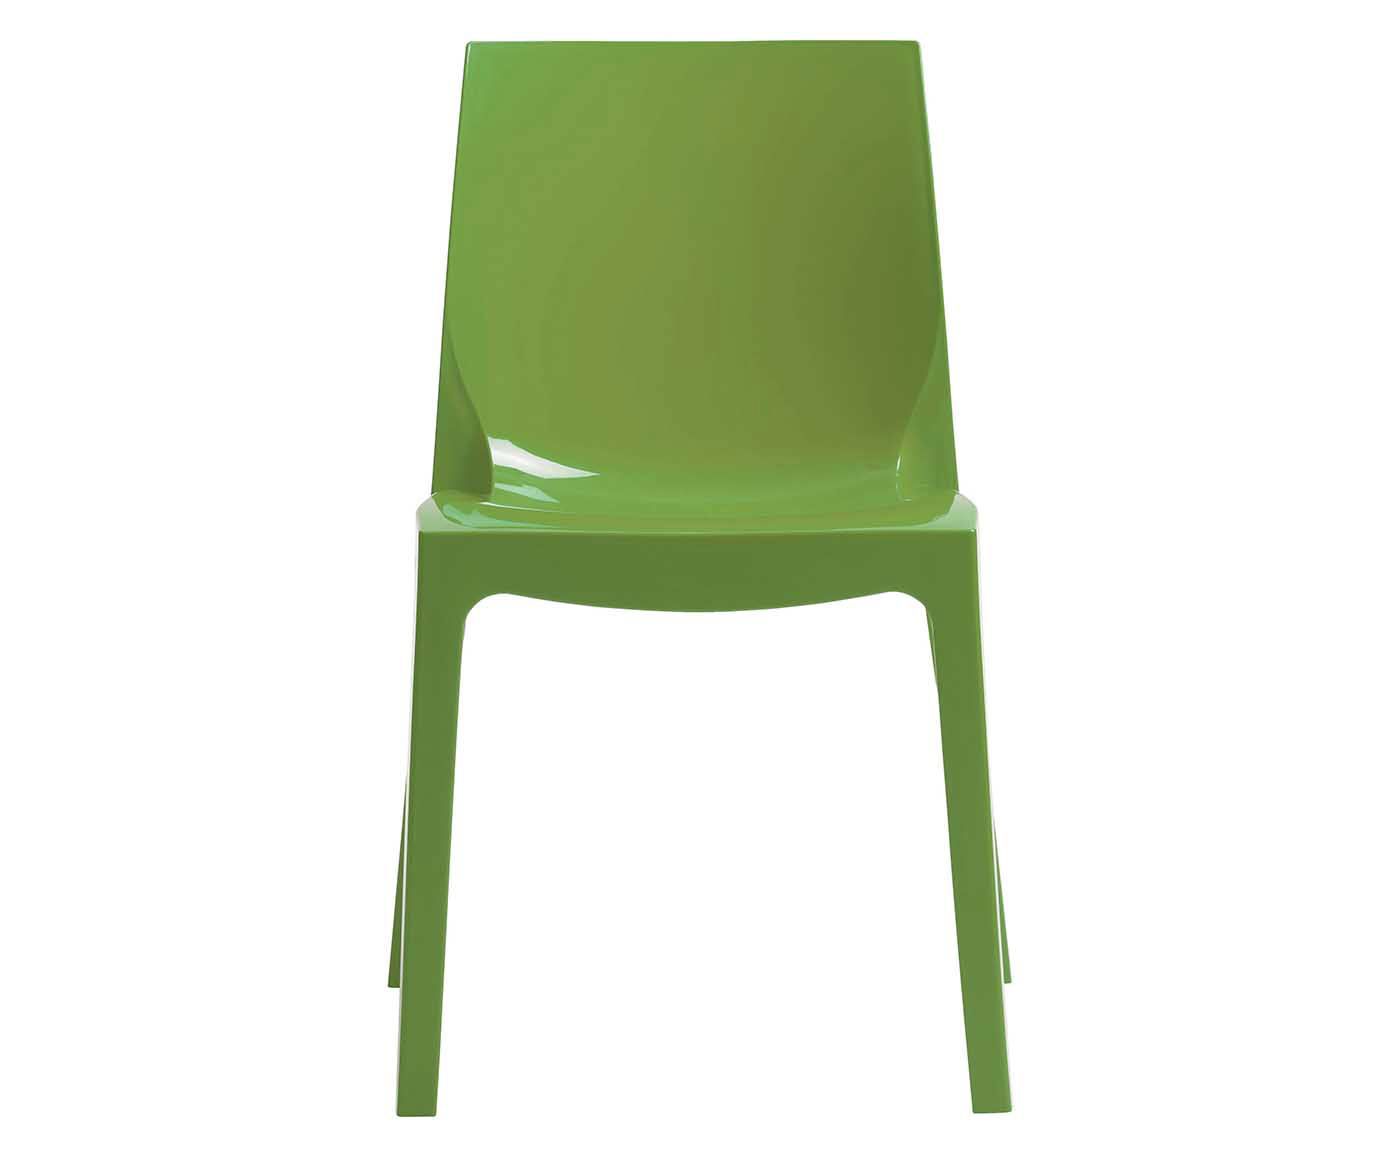 Cadeira mademon - energy | Westwing.com.br